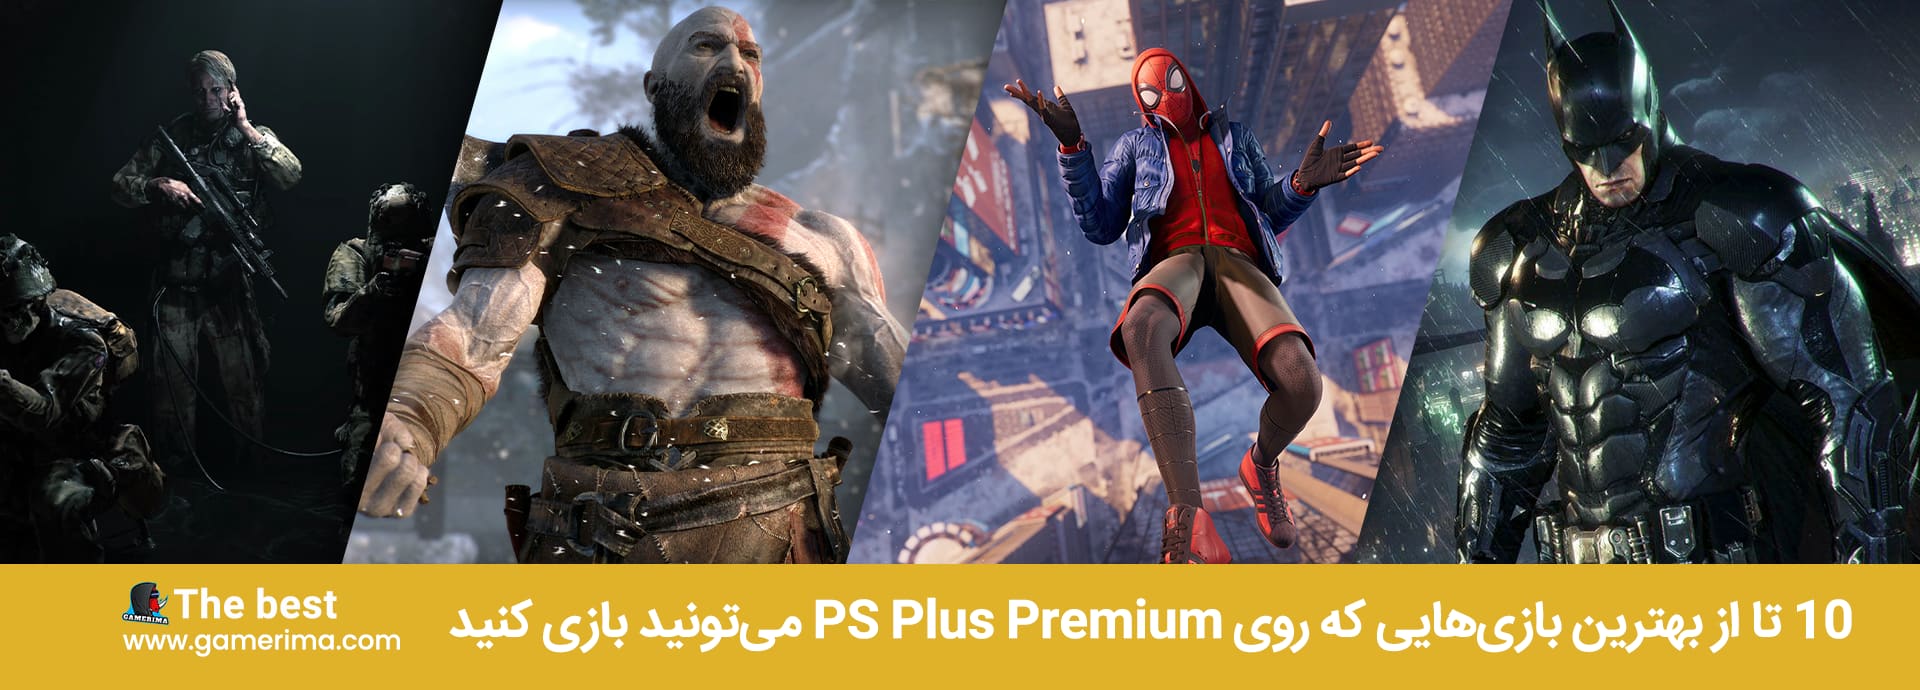 Best games on PS Plus Premium